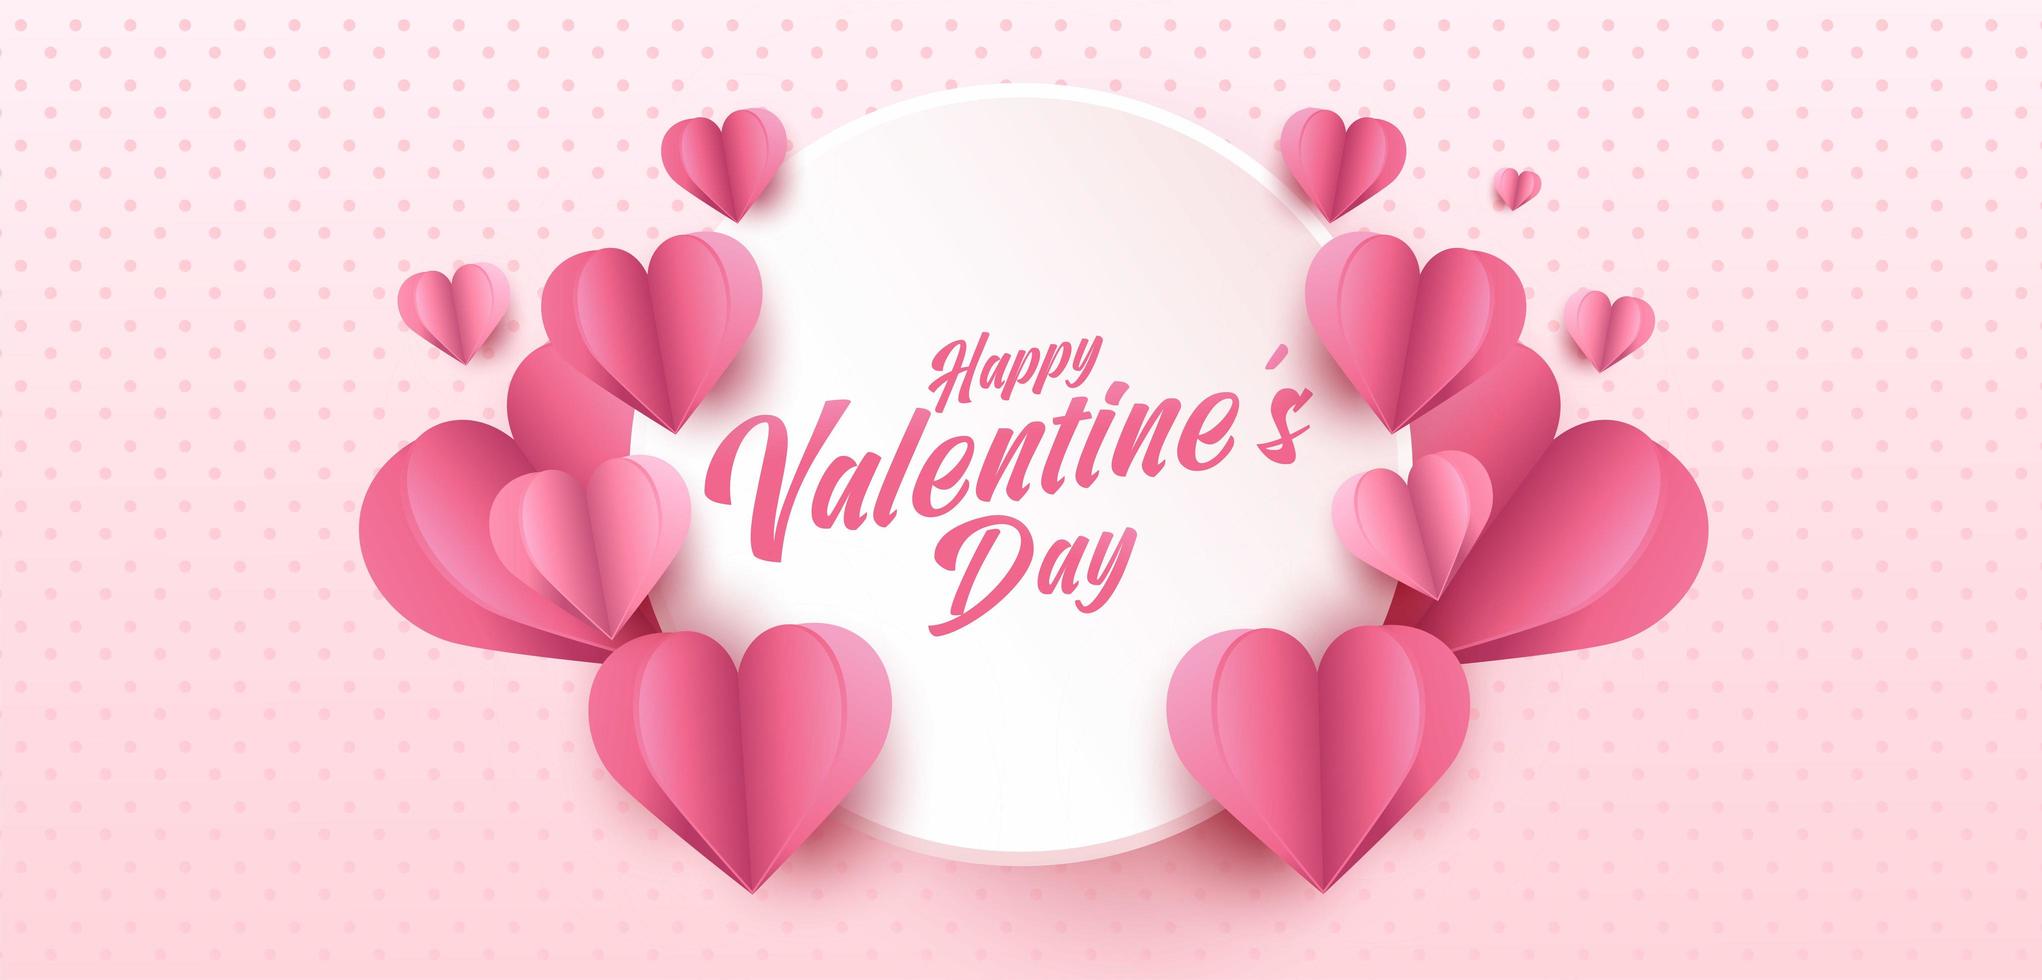 gelukkige Valentijnsdag wenskaart ontwerp. vakantiebanner met hartvormen in papierkunststijl. papierkunst en digitale ambachtelijke stijl illustratie vector